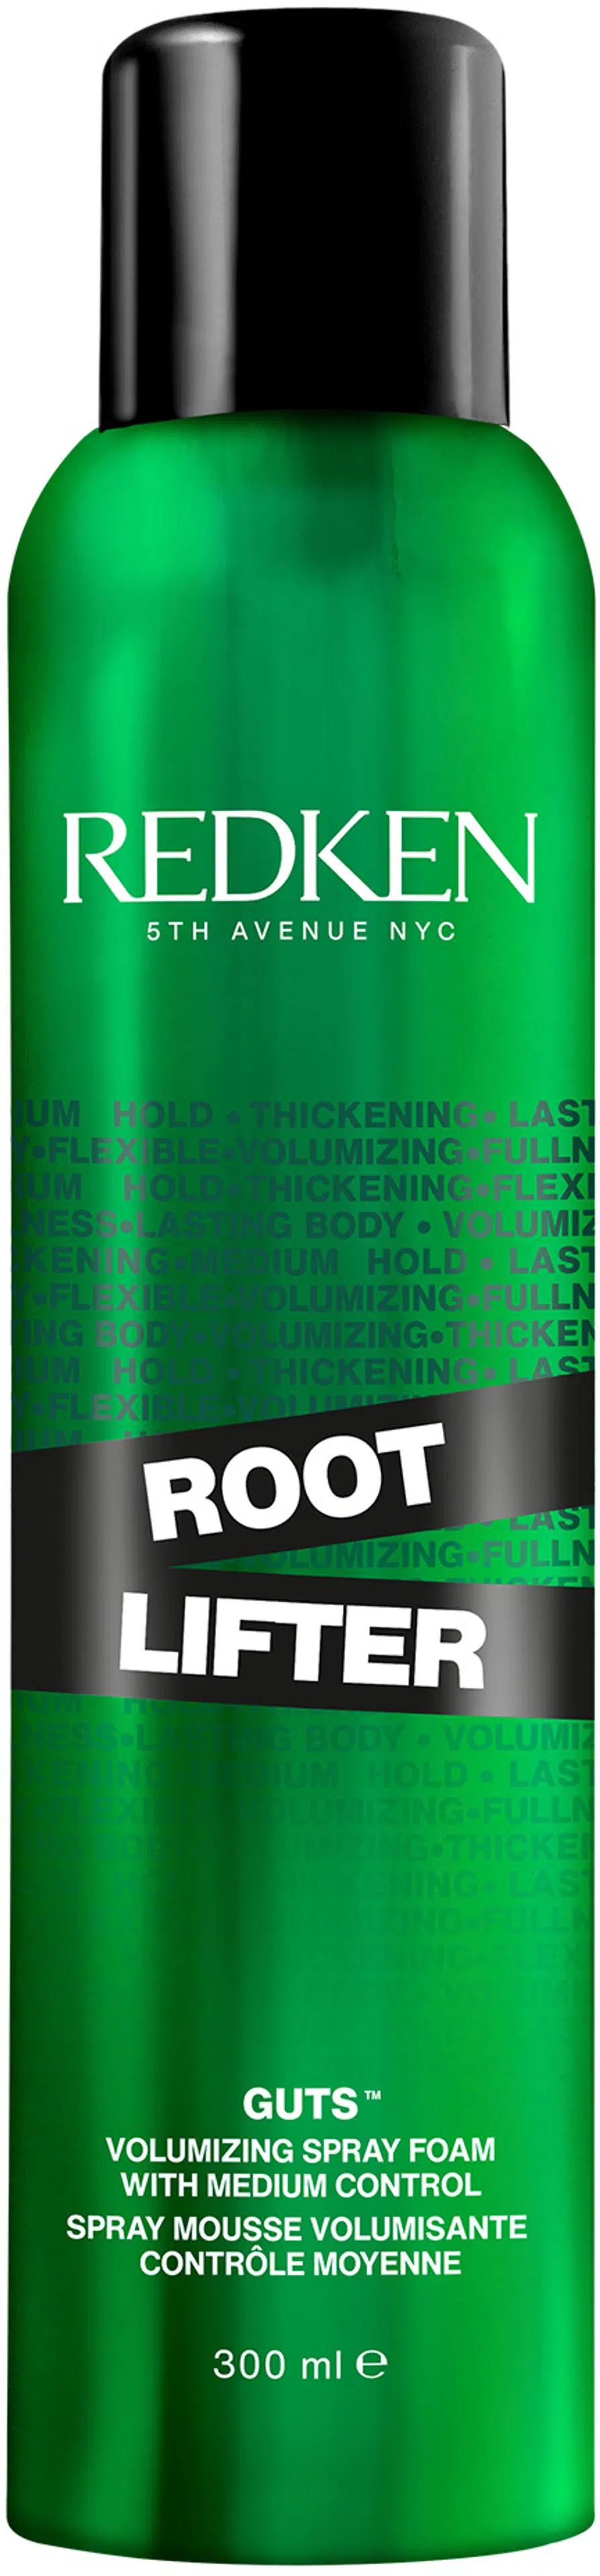 Redken Root Lifter Volumizing Spray Foam muotovaahto 300 ml